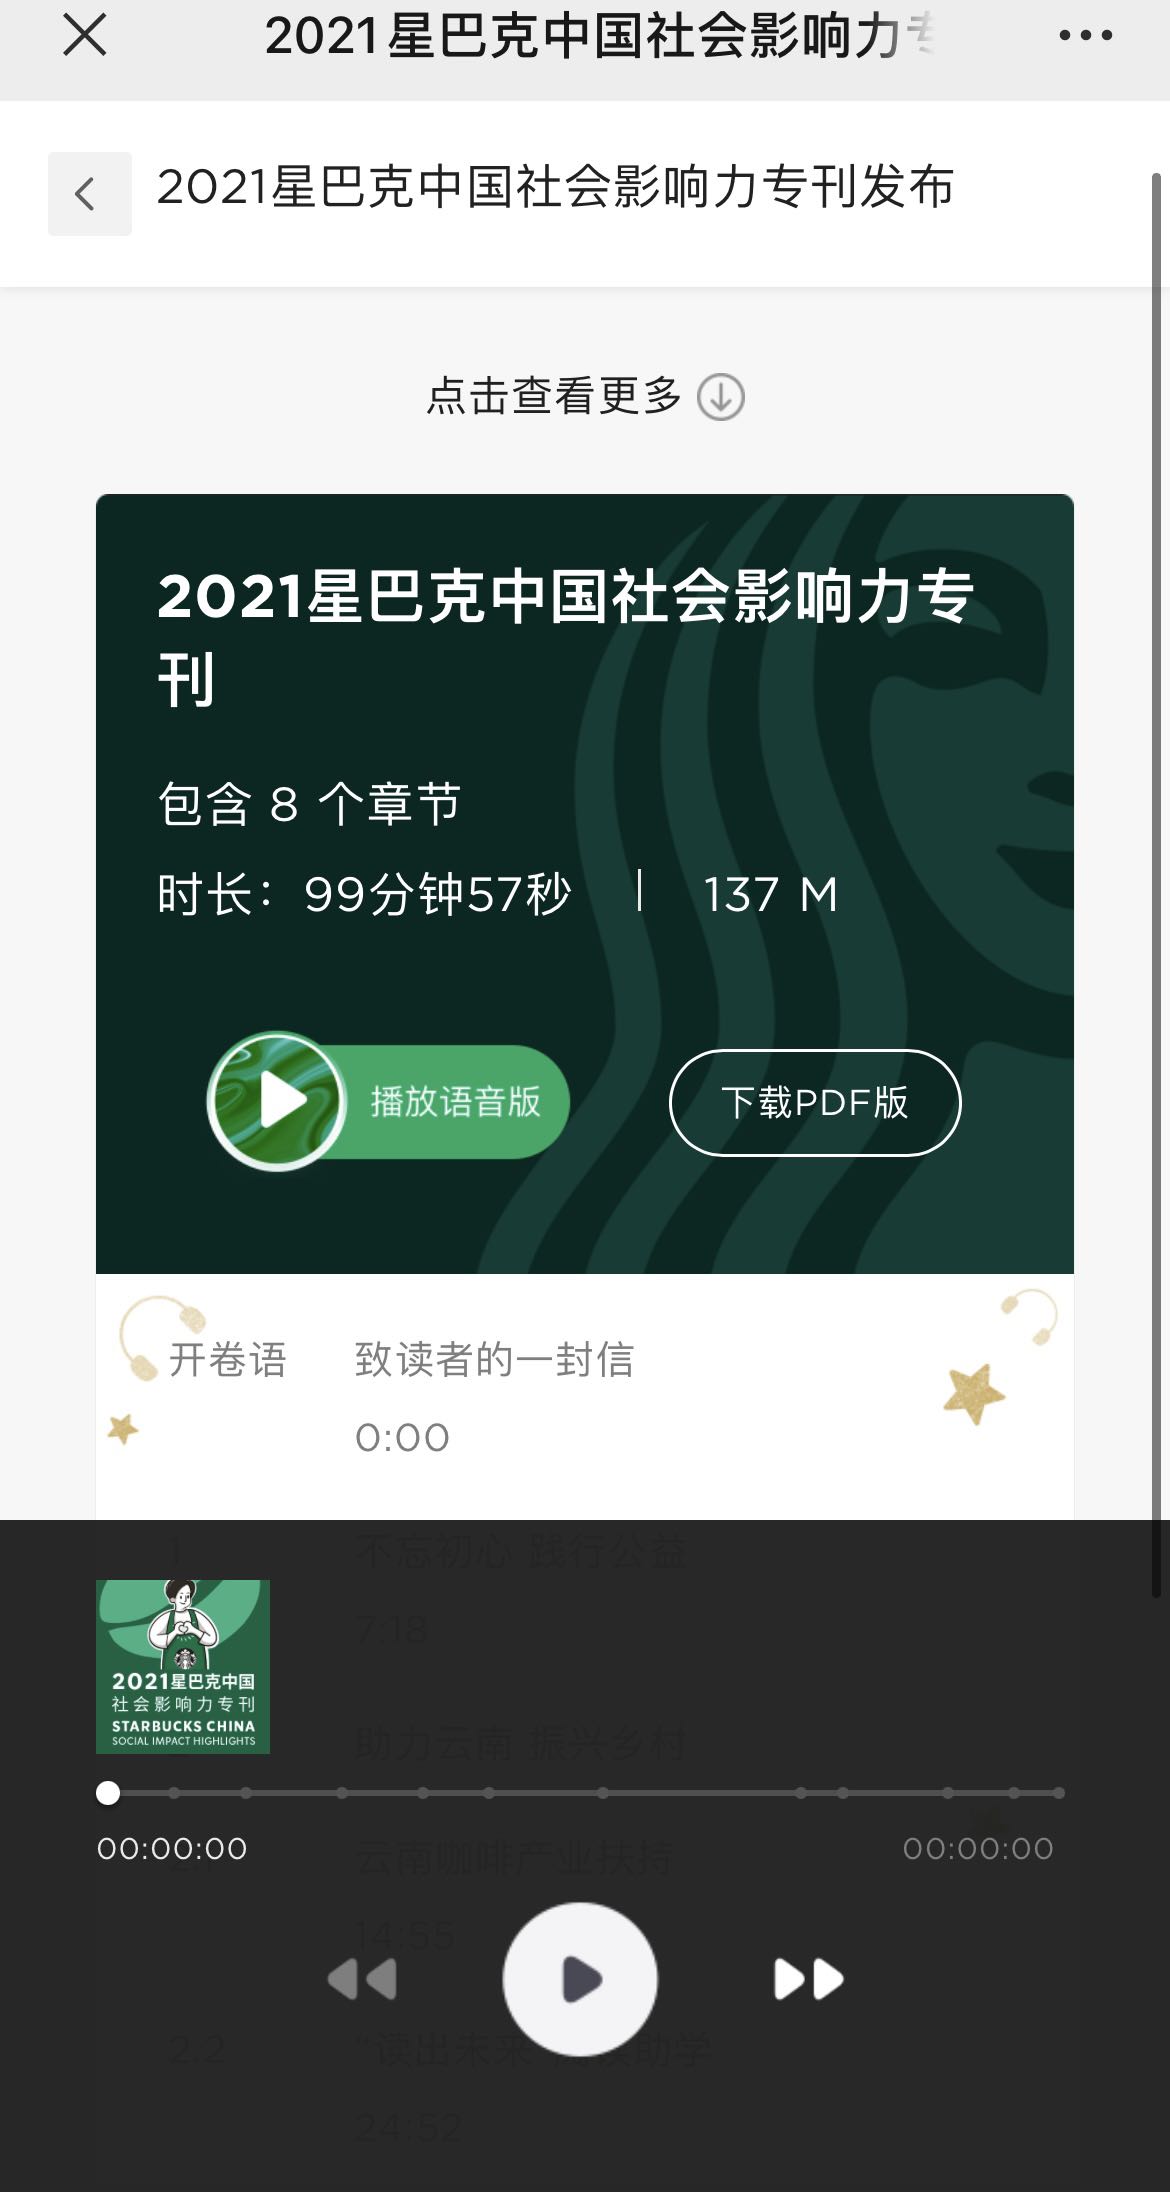 2021 星巴克中国社会影响力专刊正式发布 Socialbeta 5323